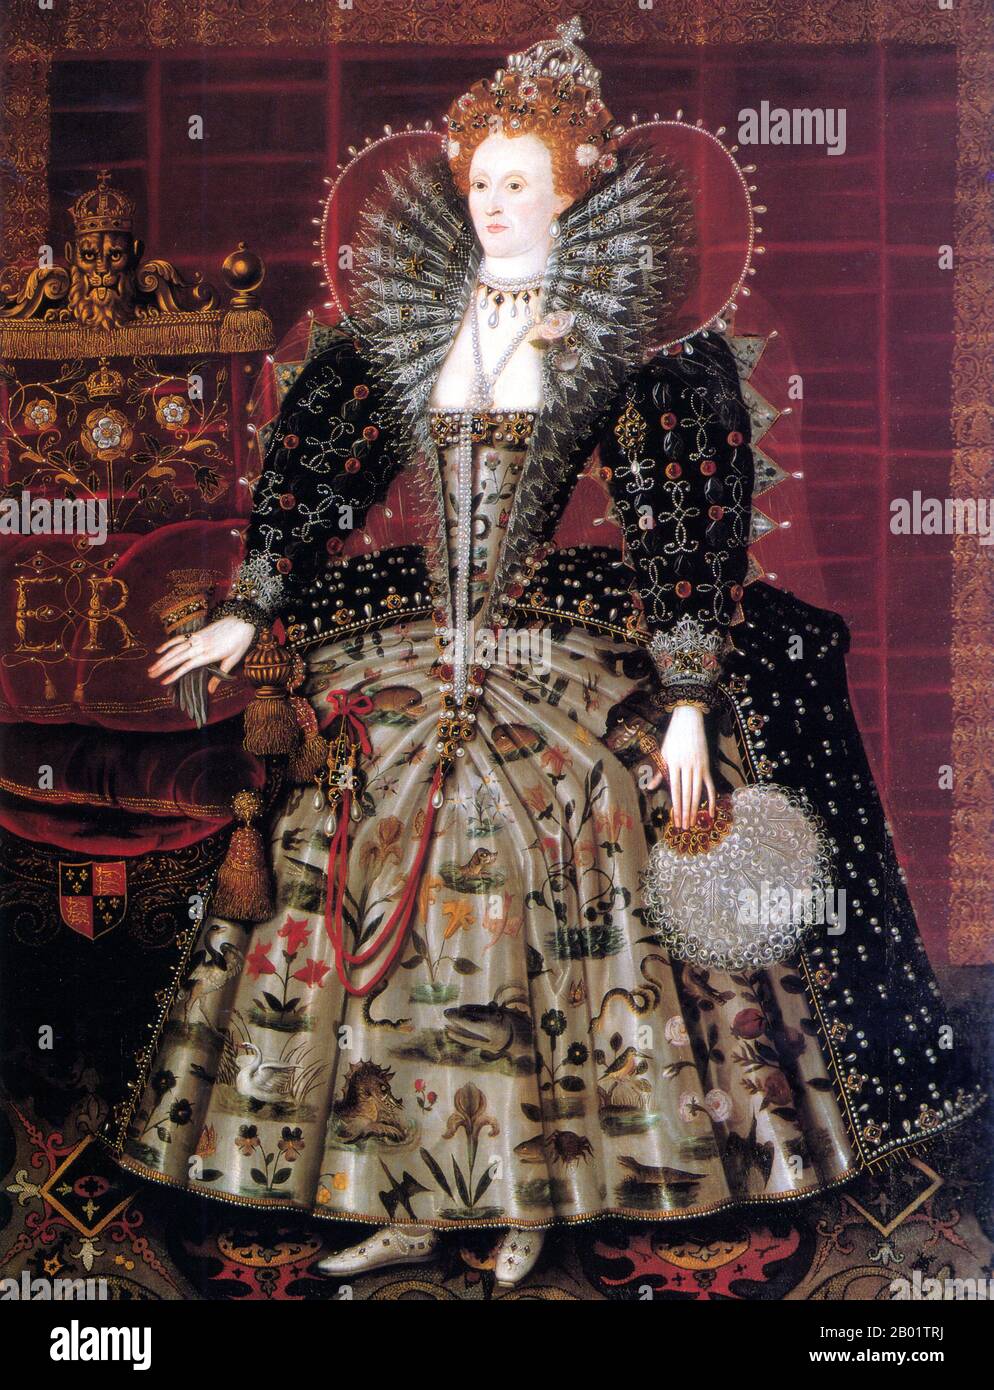 Inghilterra: Regina Elisabetta i (7 settembre 1533 - 24 marzo 1603). Il ritratto di "Hardwick Hall" dallo studio di Nicholas Hilliard (c. 1547-1619), c. 1599. Elisabetta i del Casato dei Tudor fu regina d'Inghilterra e d'Irlanda dal 17 novembre 1558 fino alla sua morte nel 1603. L'unica figlia sopravvissuta di Enrico VIII e della sua seconda moglie, Anna Bolena, fu inizialmente dichiarata illegittima a causa dell'esecuzione di Anna e dell'annullamento del suo matrimonio; Enrico in seguito la restaurò alla linea di successione. Fu temporaneamente imprigionata durante il regno della sorellastra Maria, ma divenne regina dopo la morte di Maria. Foto Stock